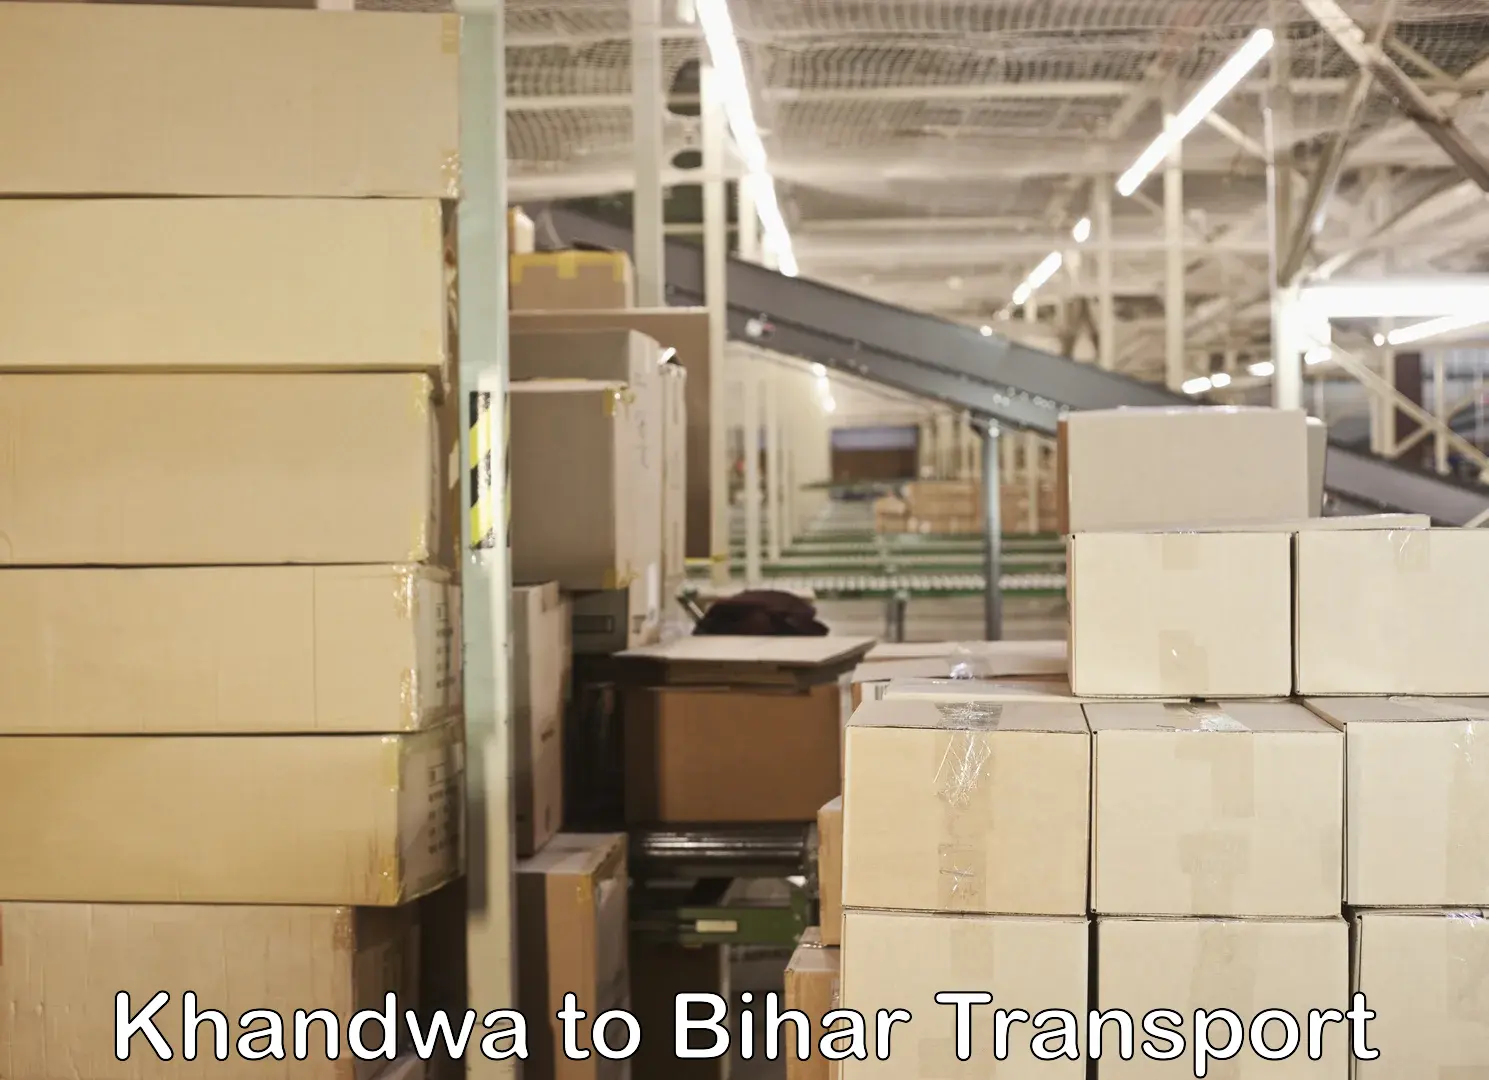 Furniture transport service in Khandwa to Saran